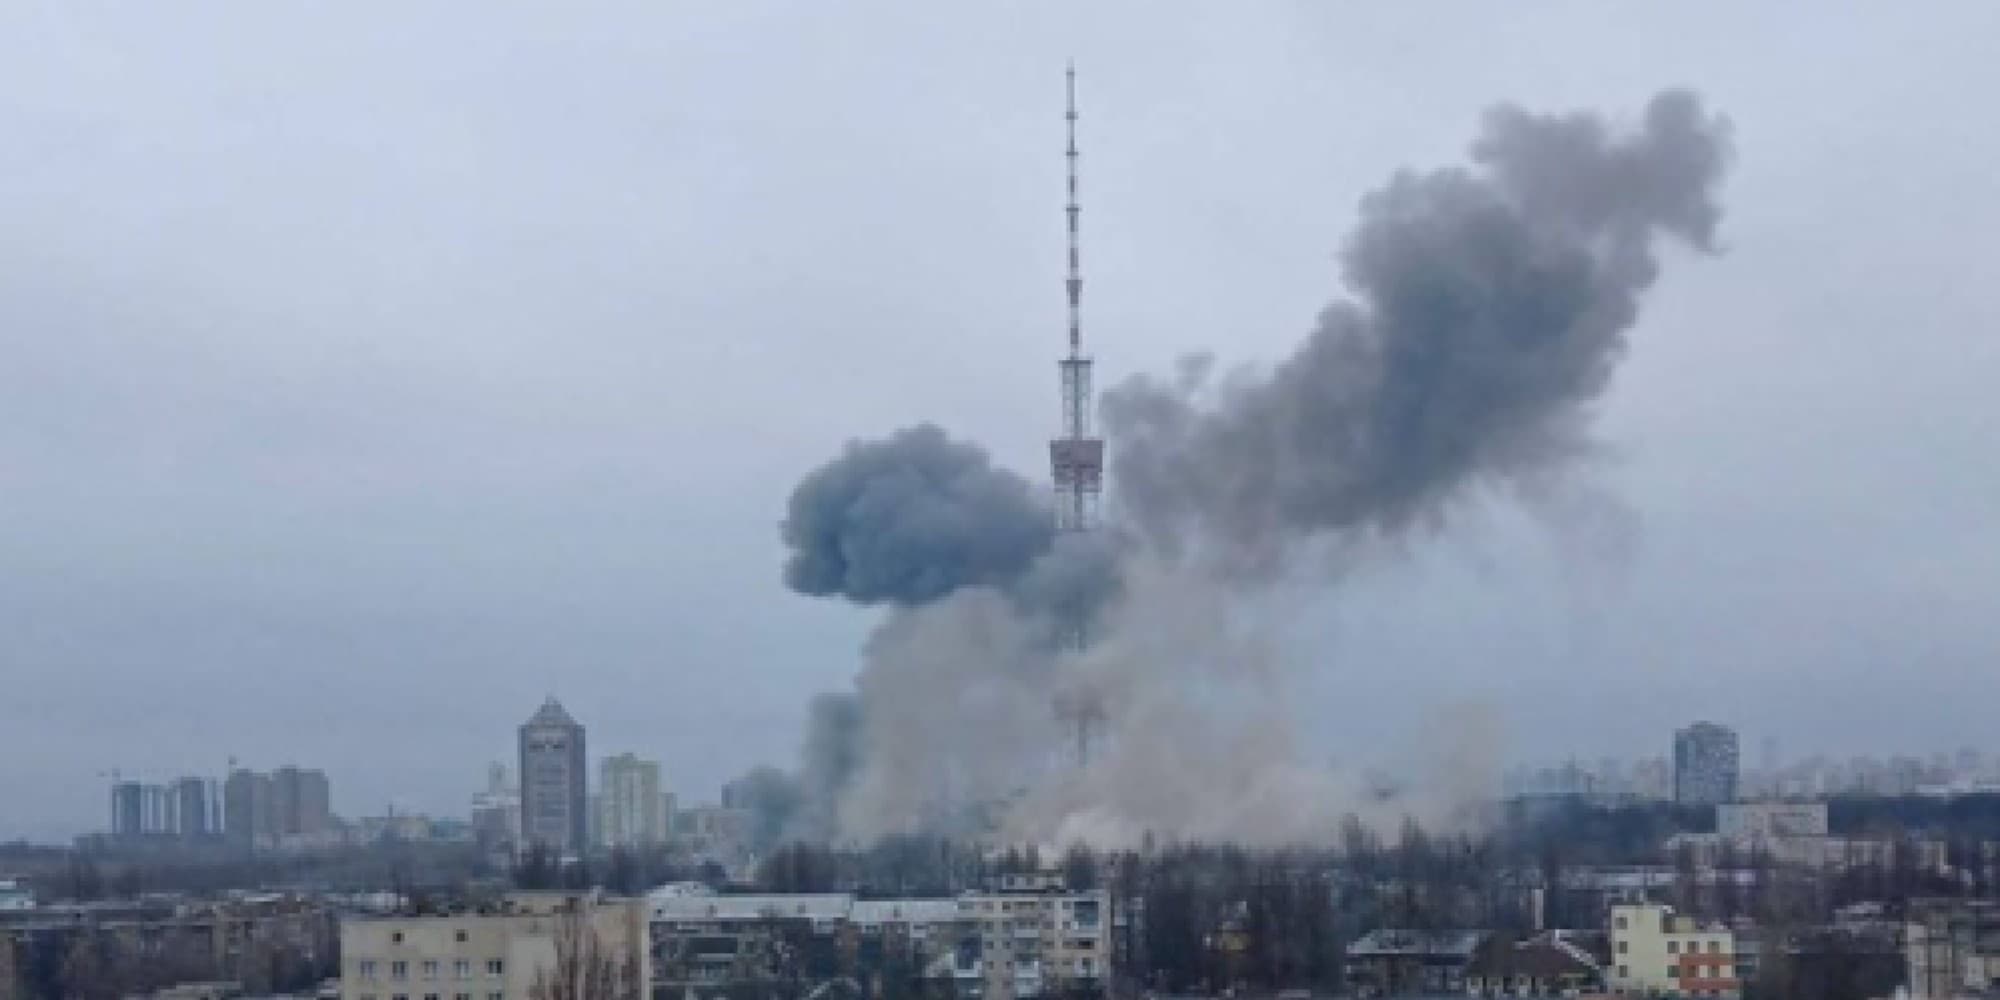 Ο στρατός της Ρωσίας έπληξε κέντρο ραδιοφωνίας και τηλεόρασης στο Κίεβο της Ουκρανίας